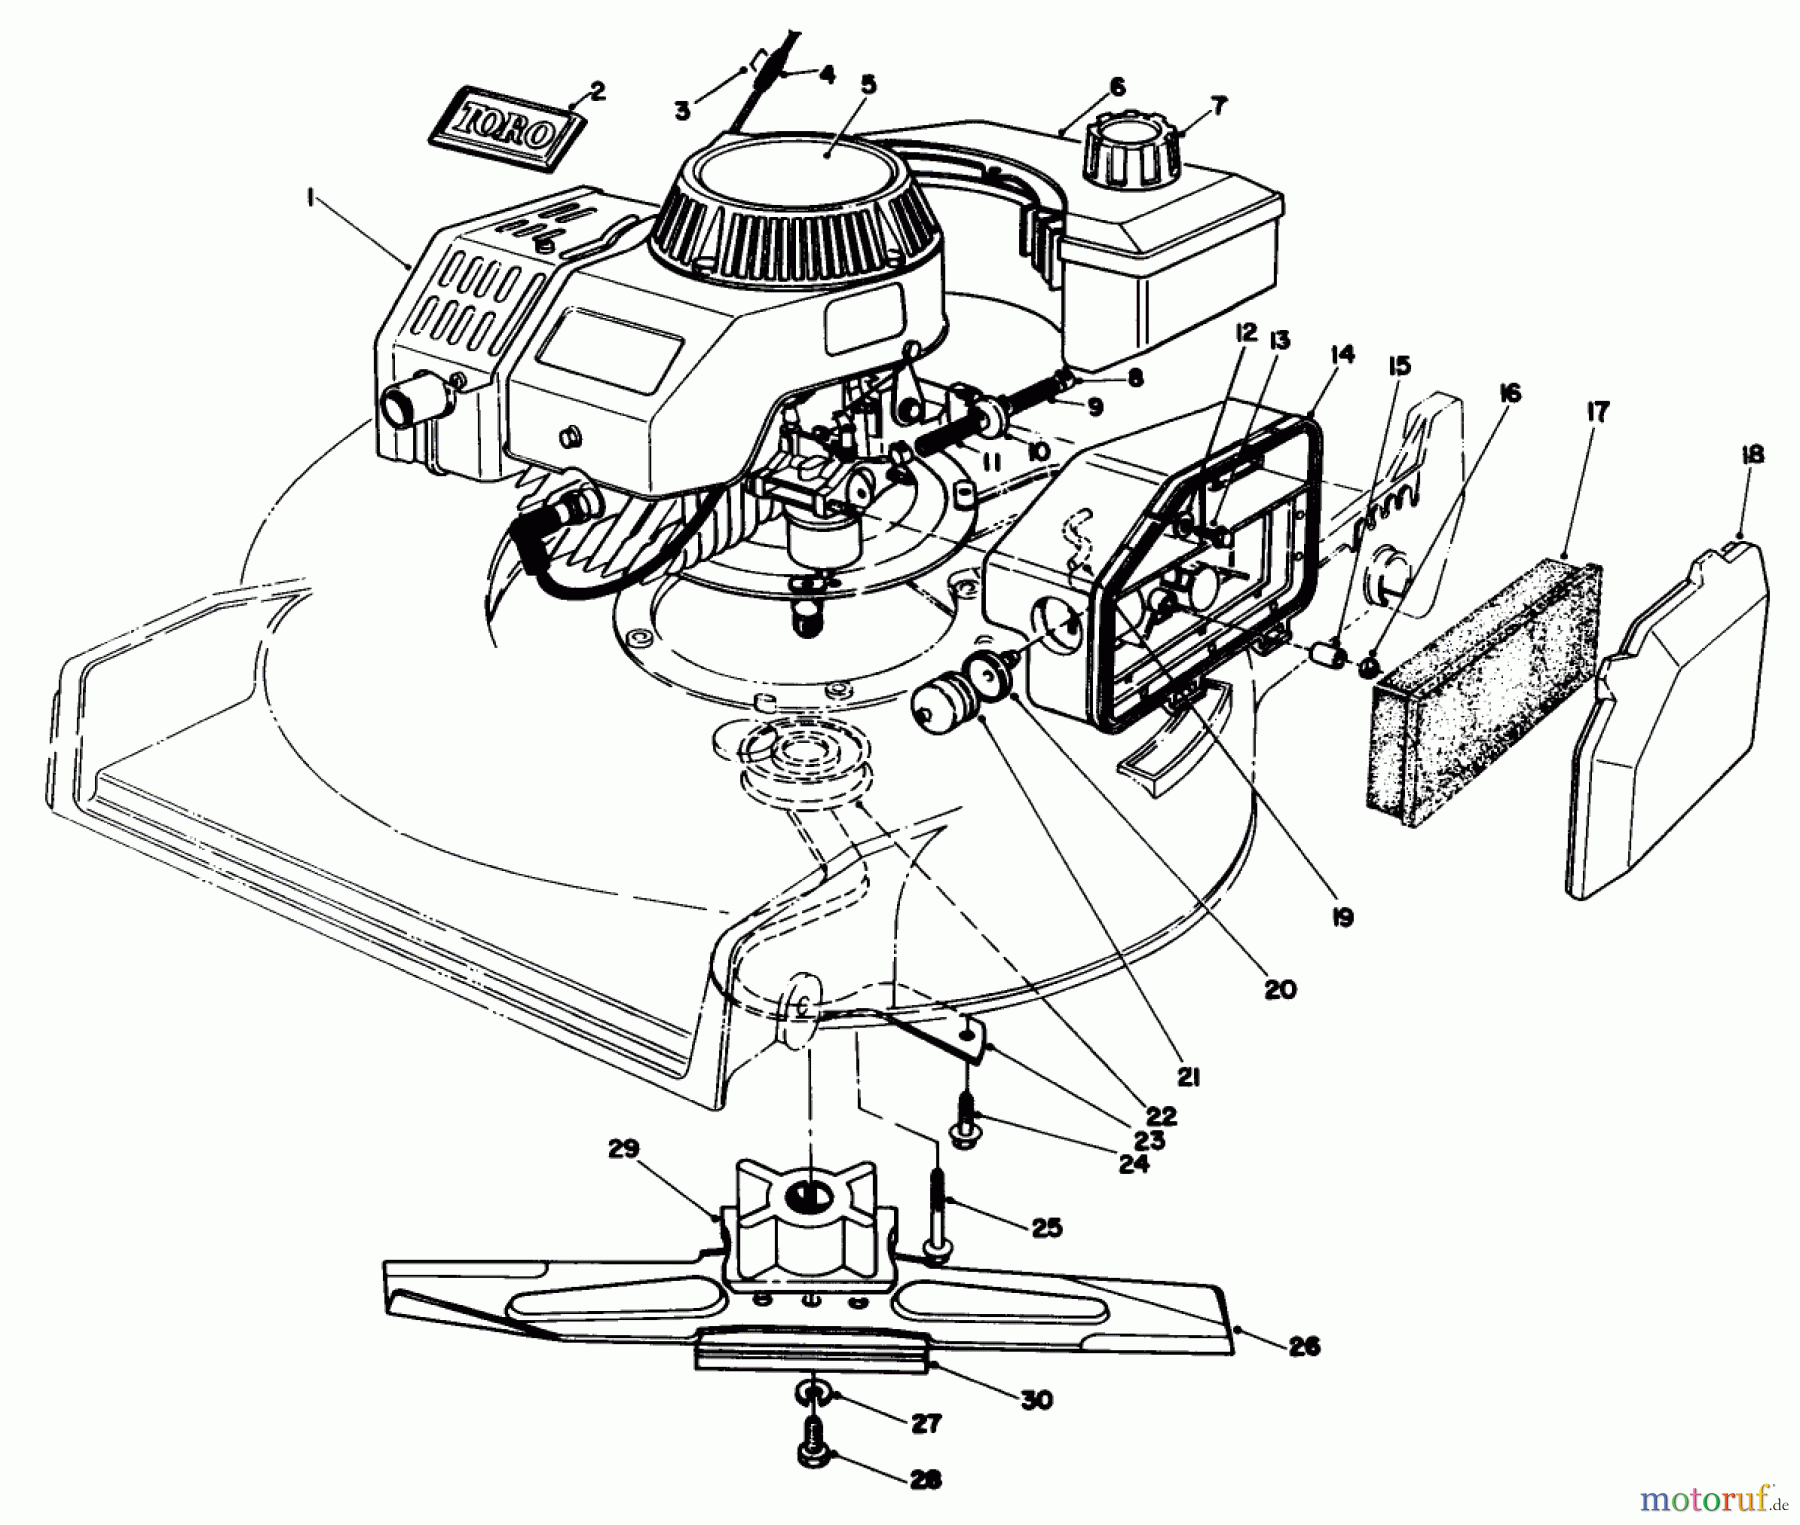  Toro Neu Mowers, Walk-Behind Seite 1 20321 - Toro Lawnmower, 1992 (2000001-2999999) ENGINE ASSEMBLY